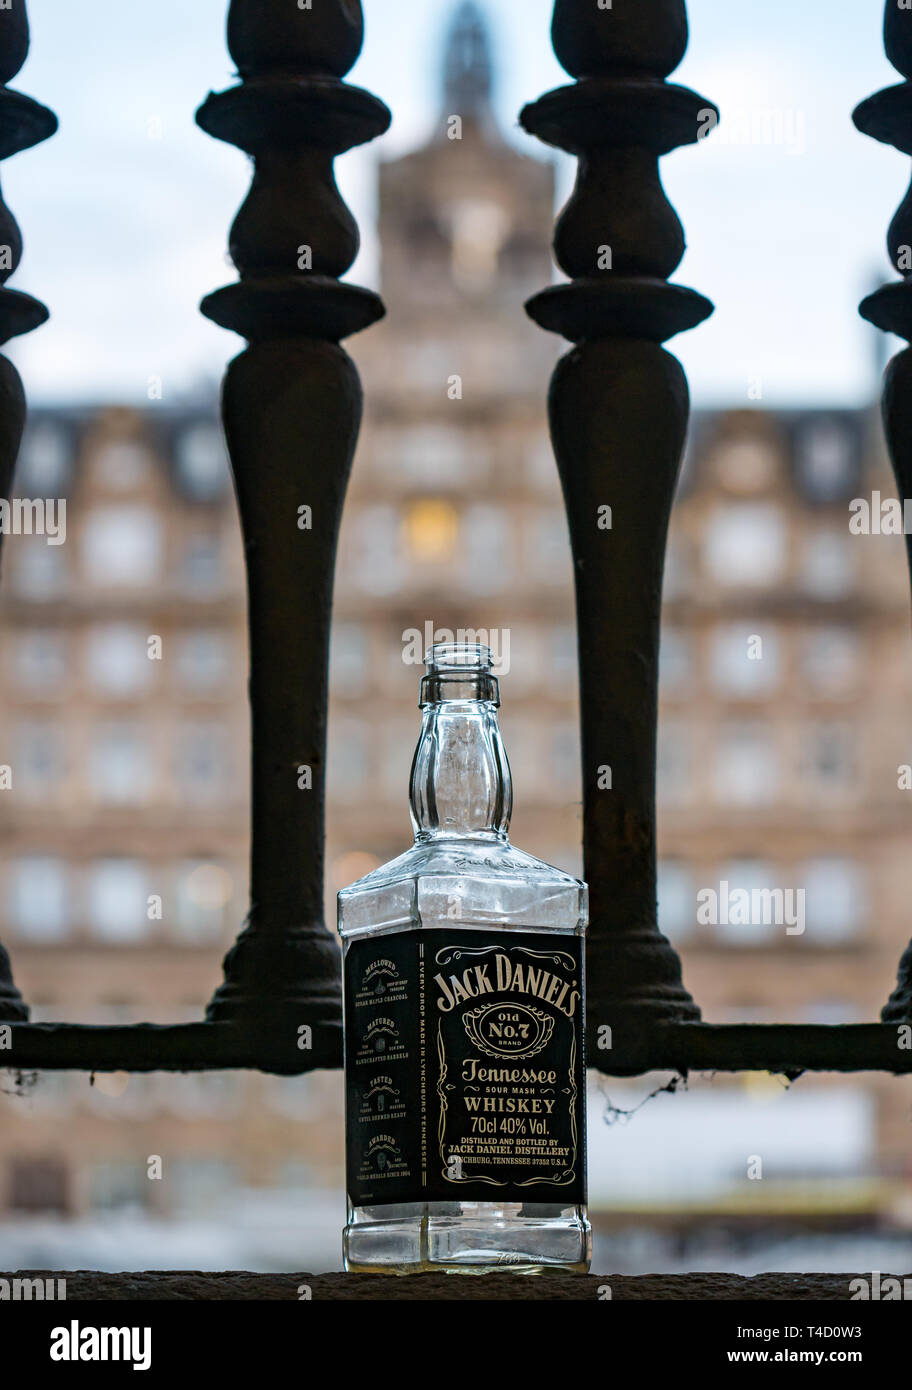 Abbandonata la bottiglia vuota di Jack Daniels Tennessee whiskey scozzese passi davanzale con Balmoral Hotel in background, Edimburgo, Scozia, Regno Unito Foto Stock